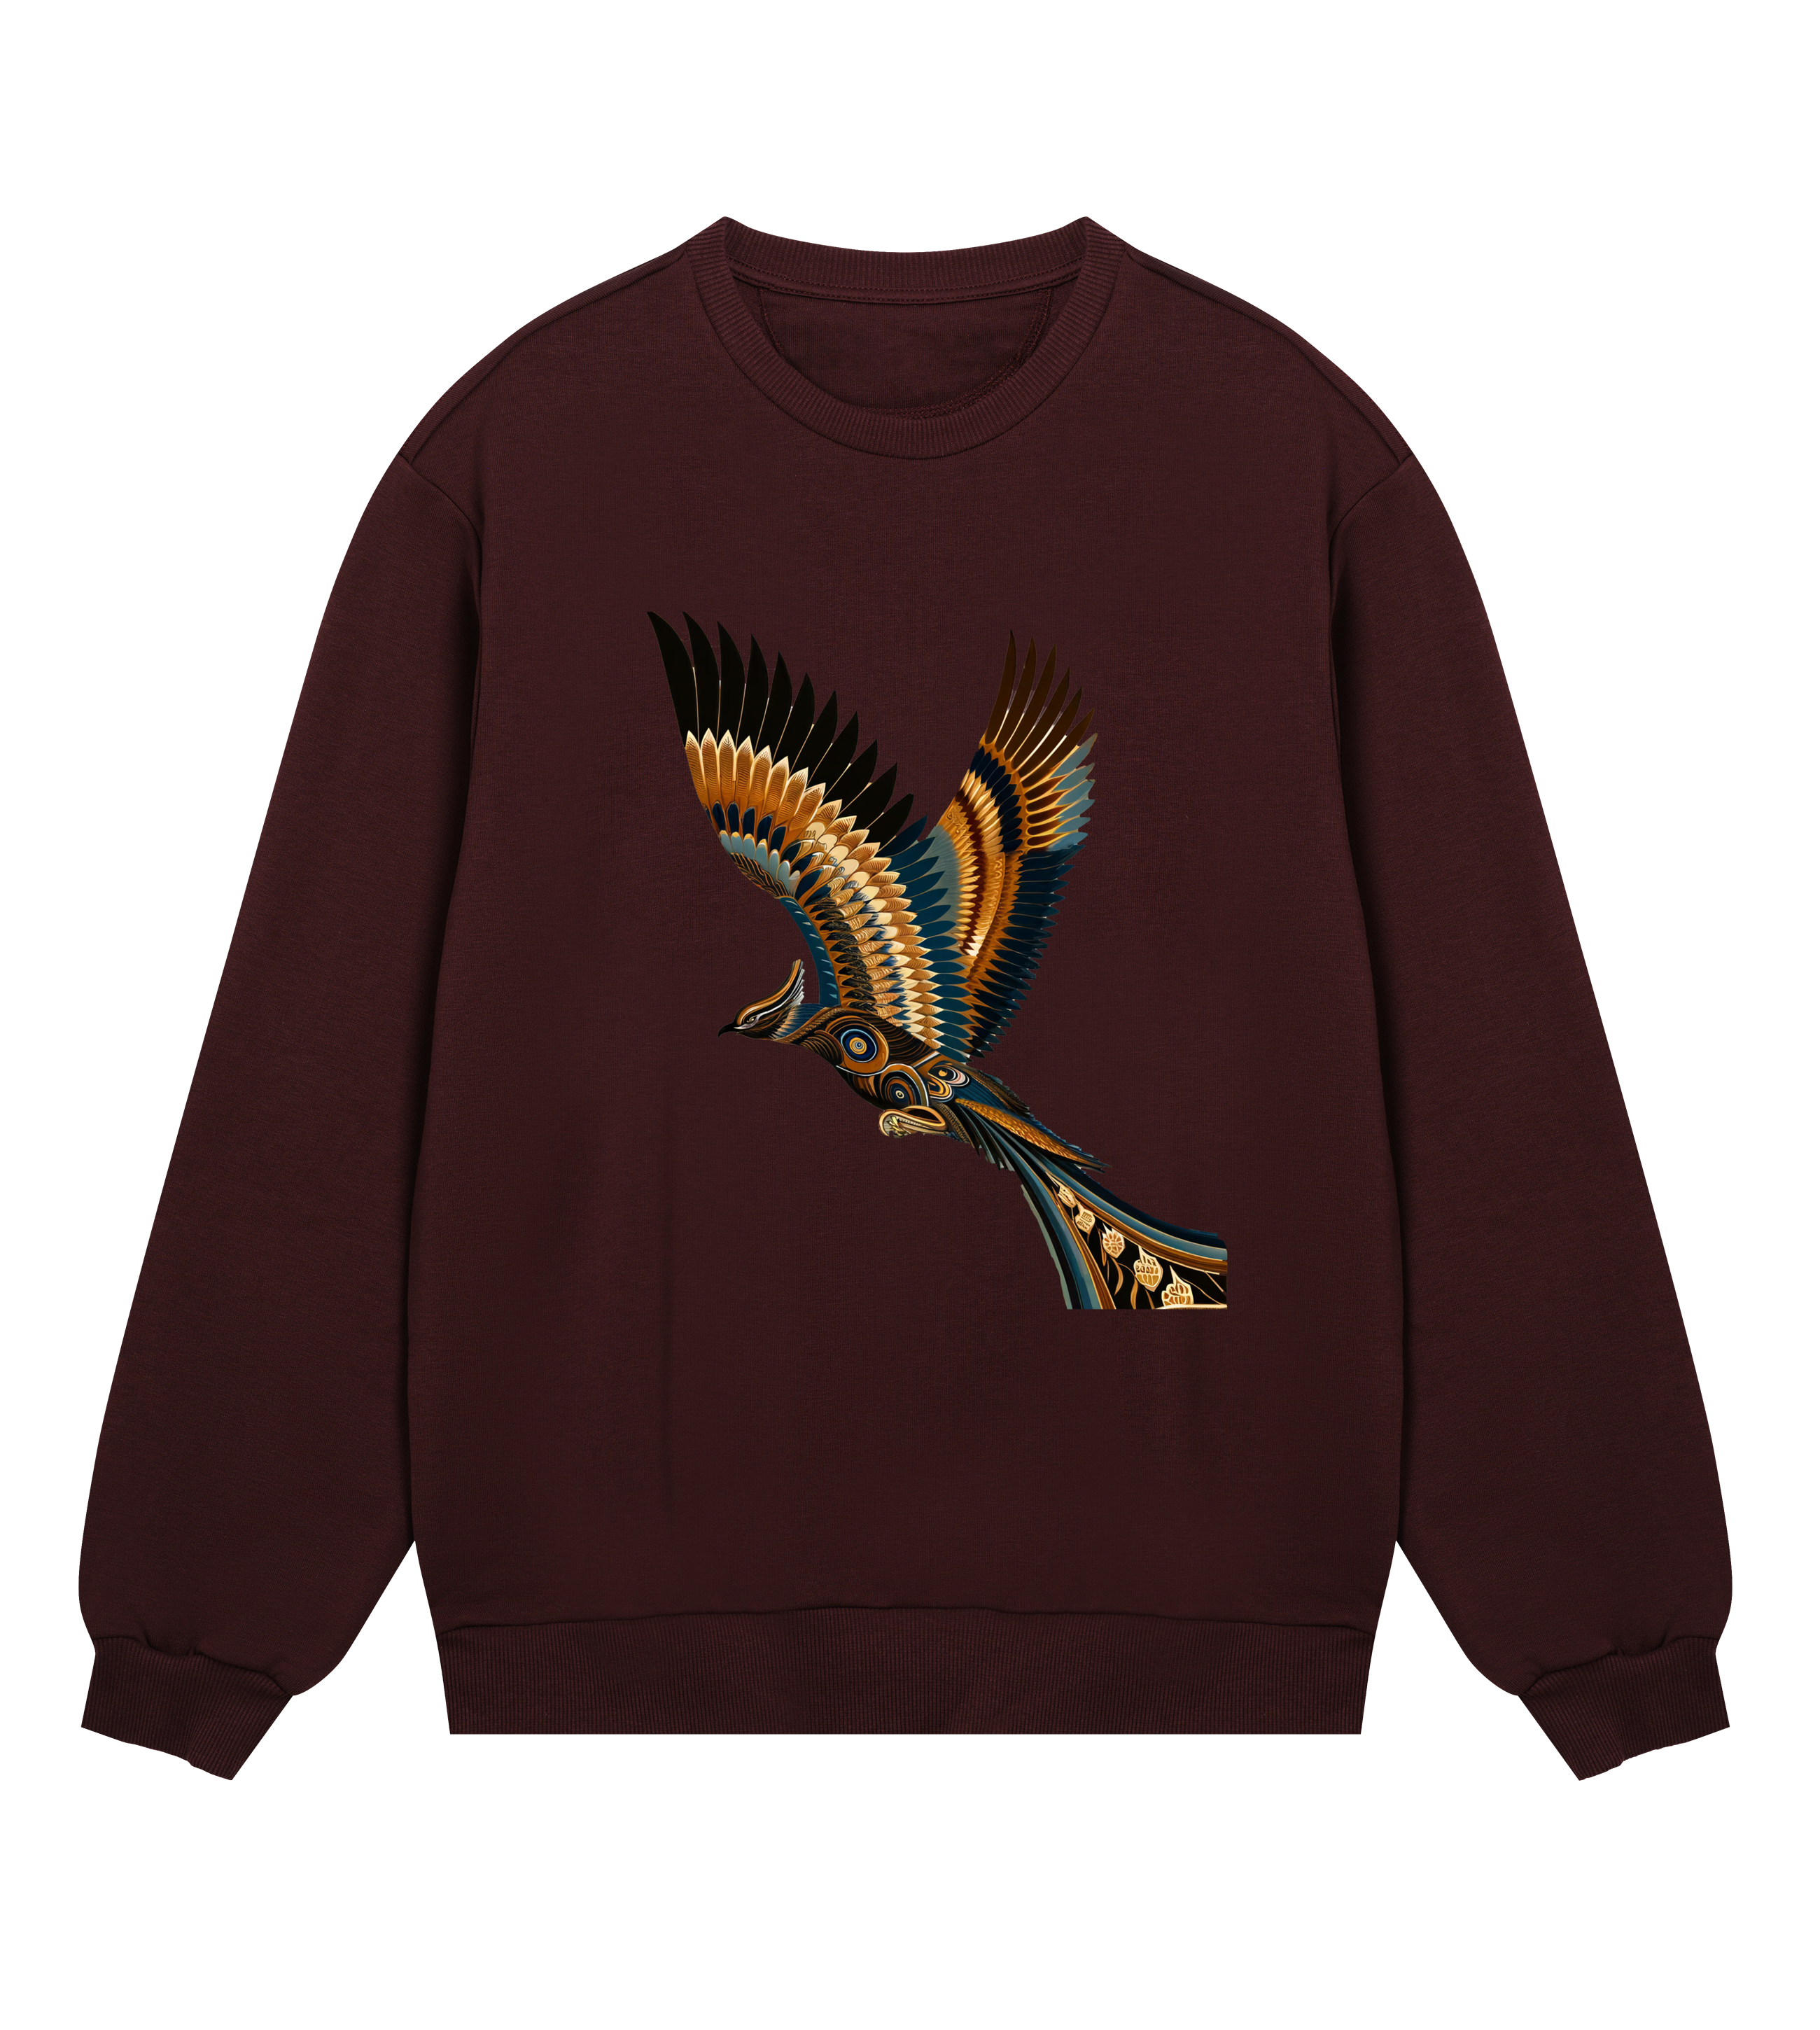 TEAL's Bird Sweatshirt for Men